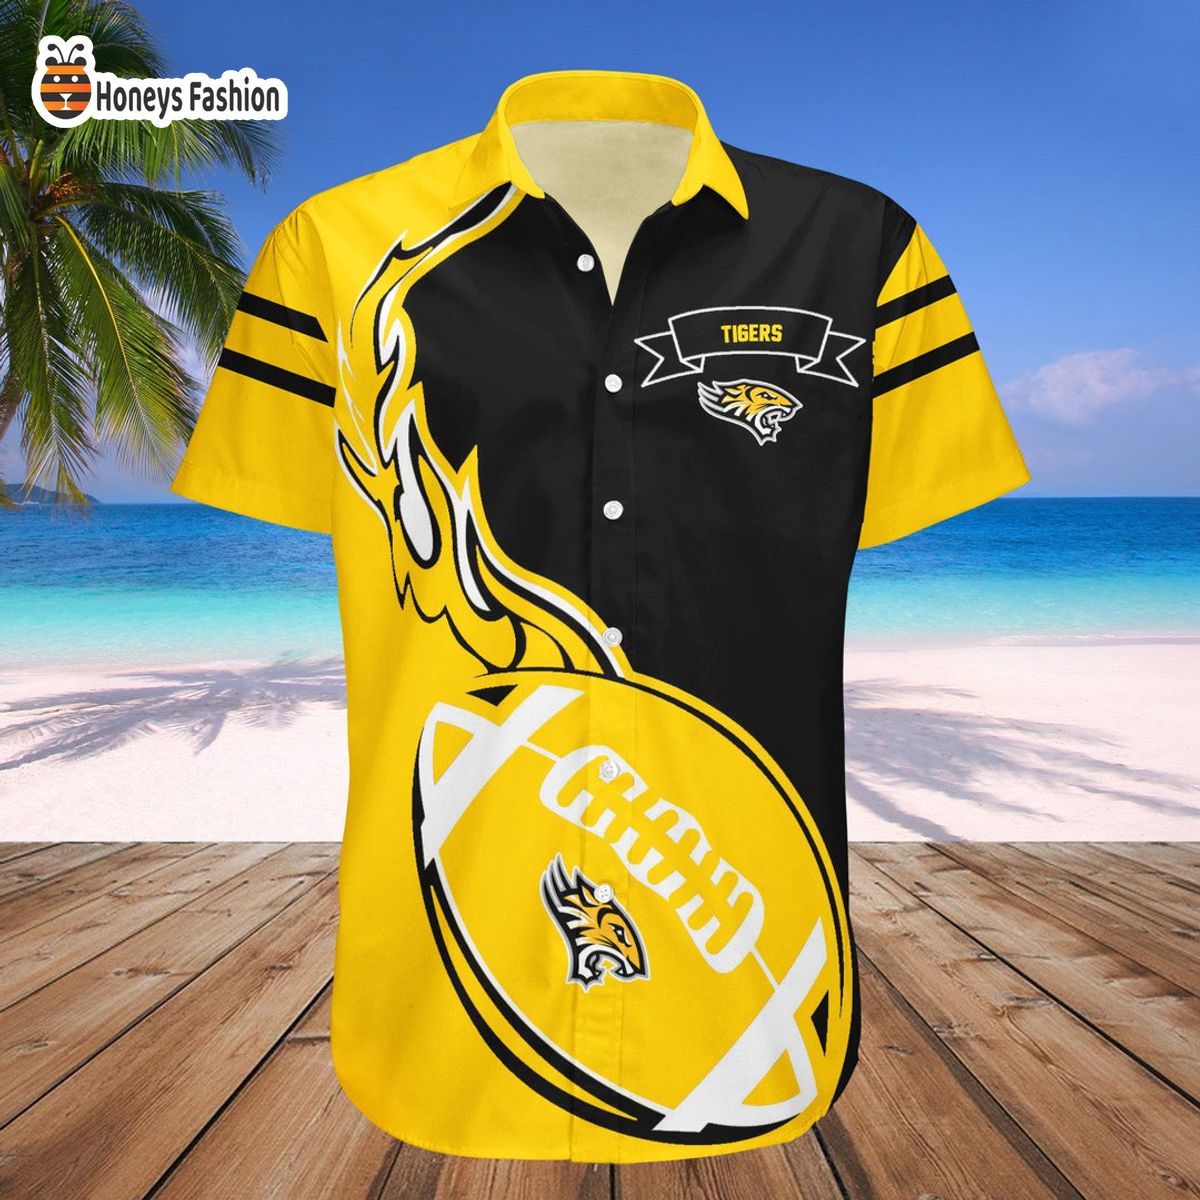 Towson Tigers NCAA Hawaiian Shirt